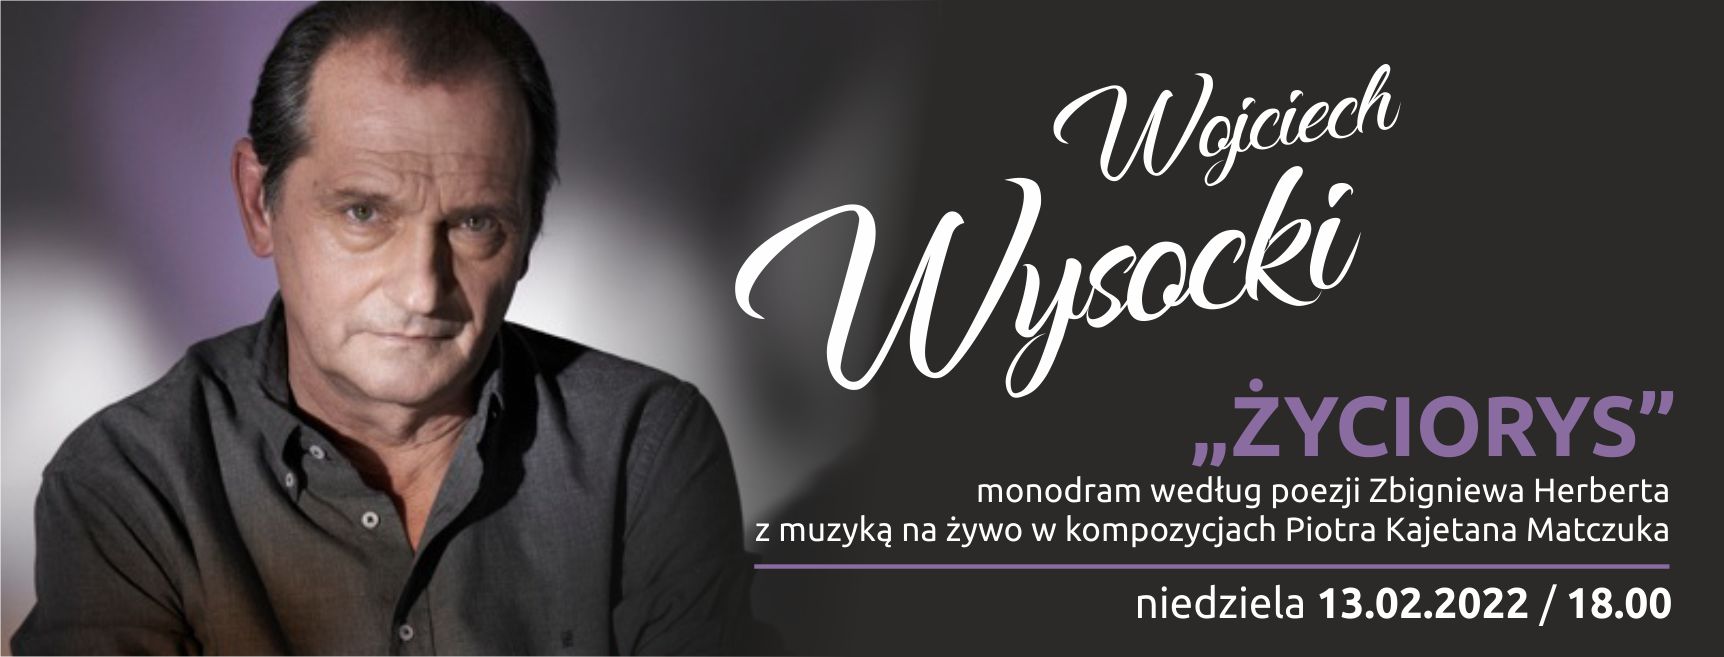 Wojciech Wysocki - Życiorys